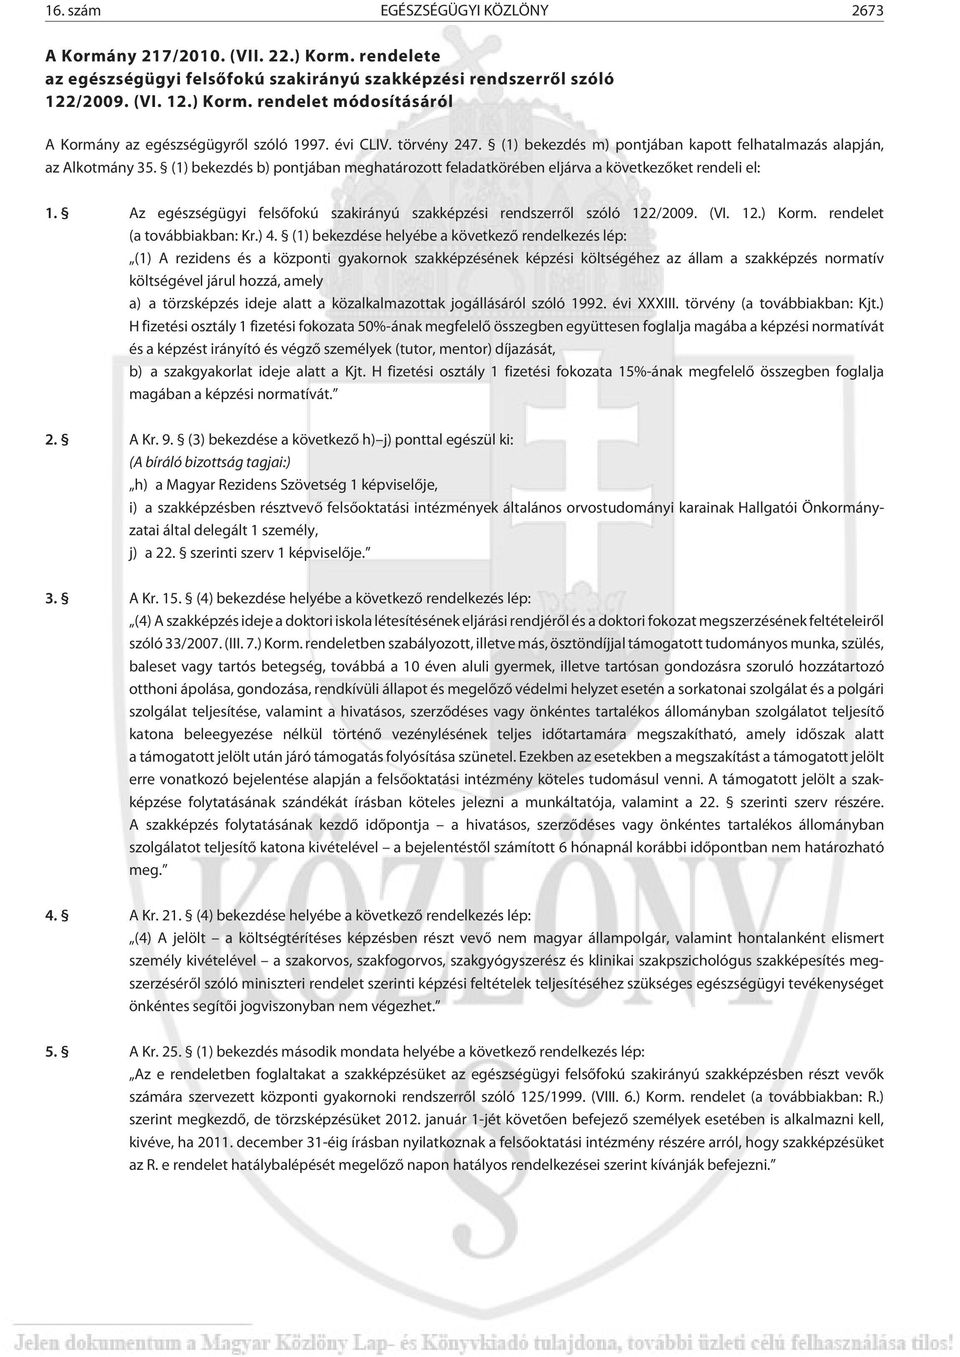 Az egészségügyi felsõfokú szakirányú szakképzési rendszerrõl szóló 122/2009. (VI. 12.) Korm. rendelet (a továbbiakban: Kr.) 4.